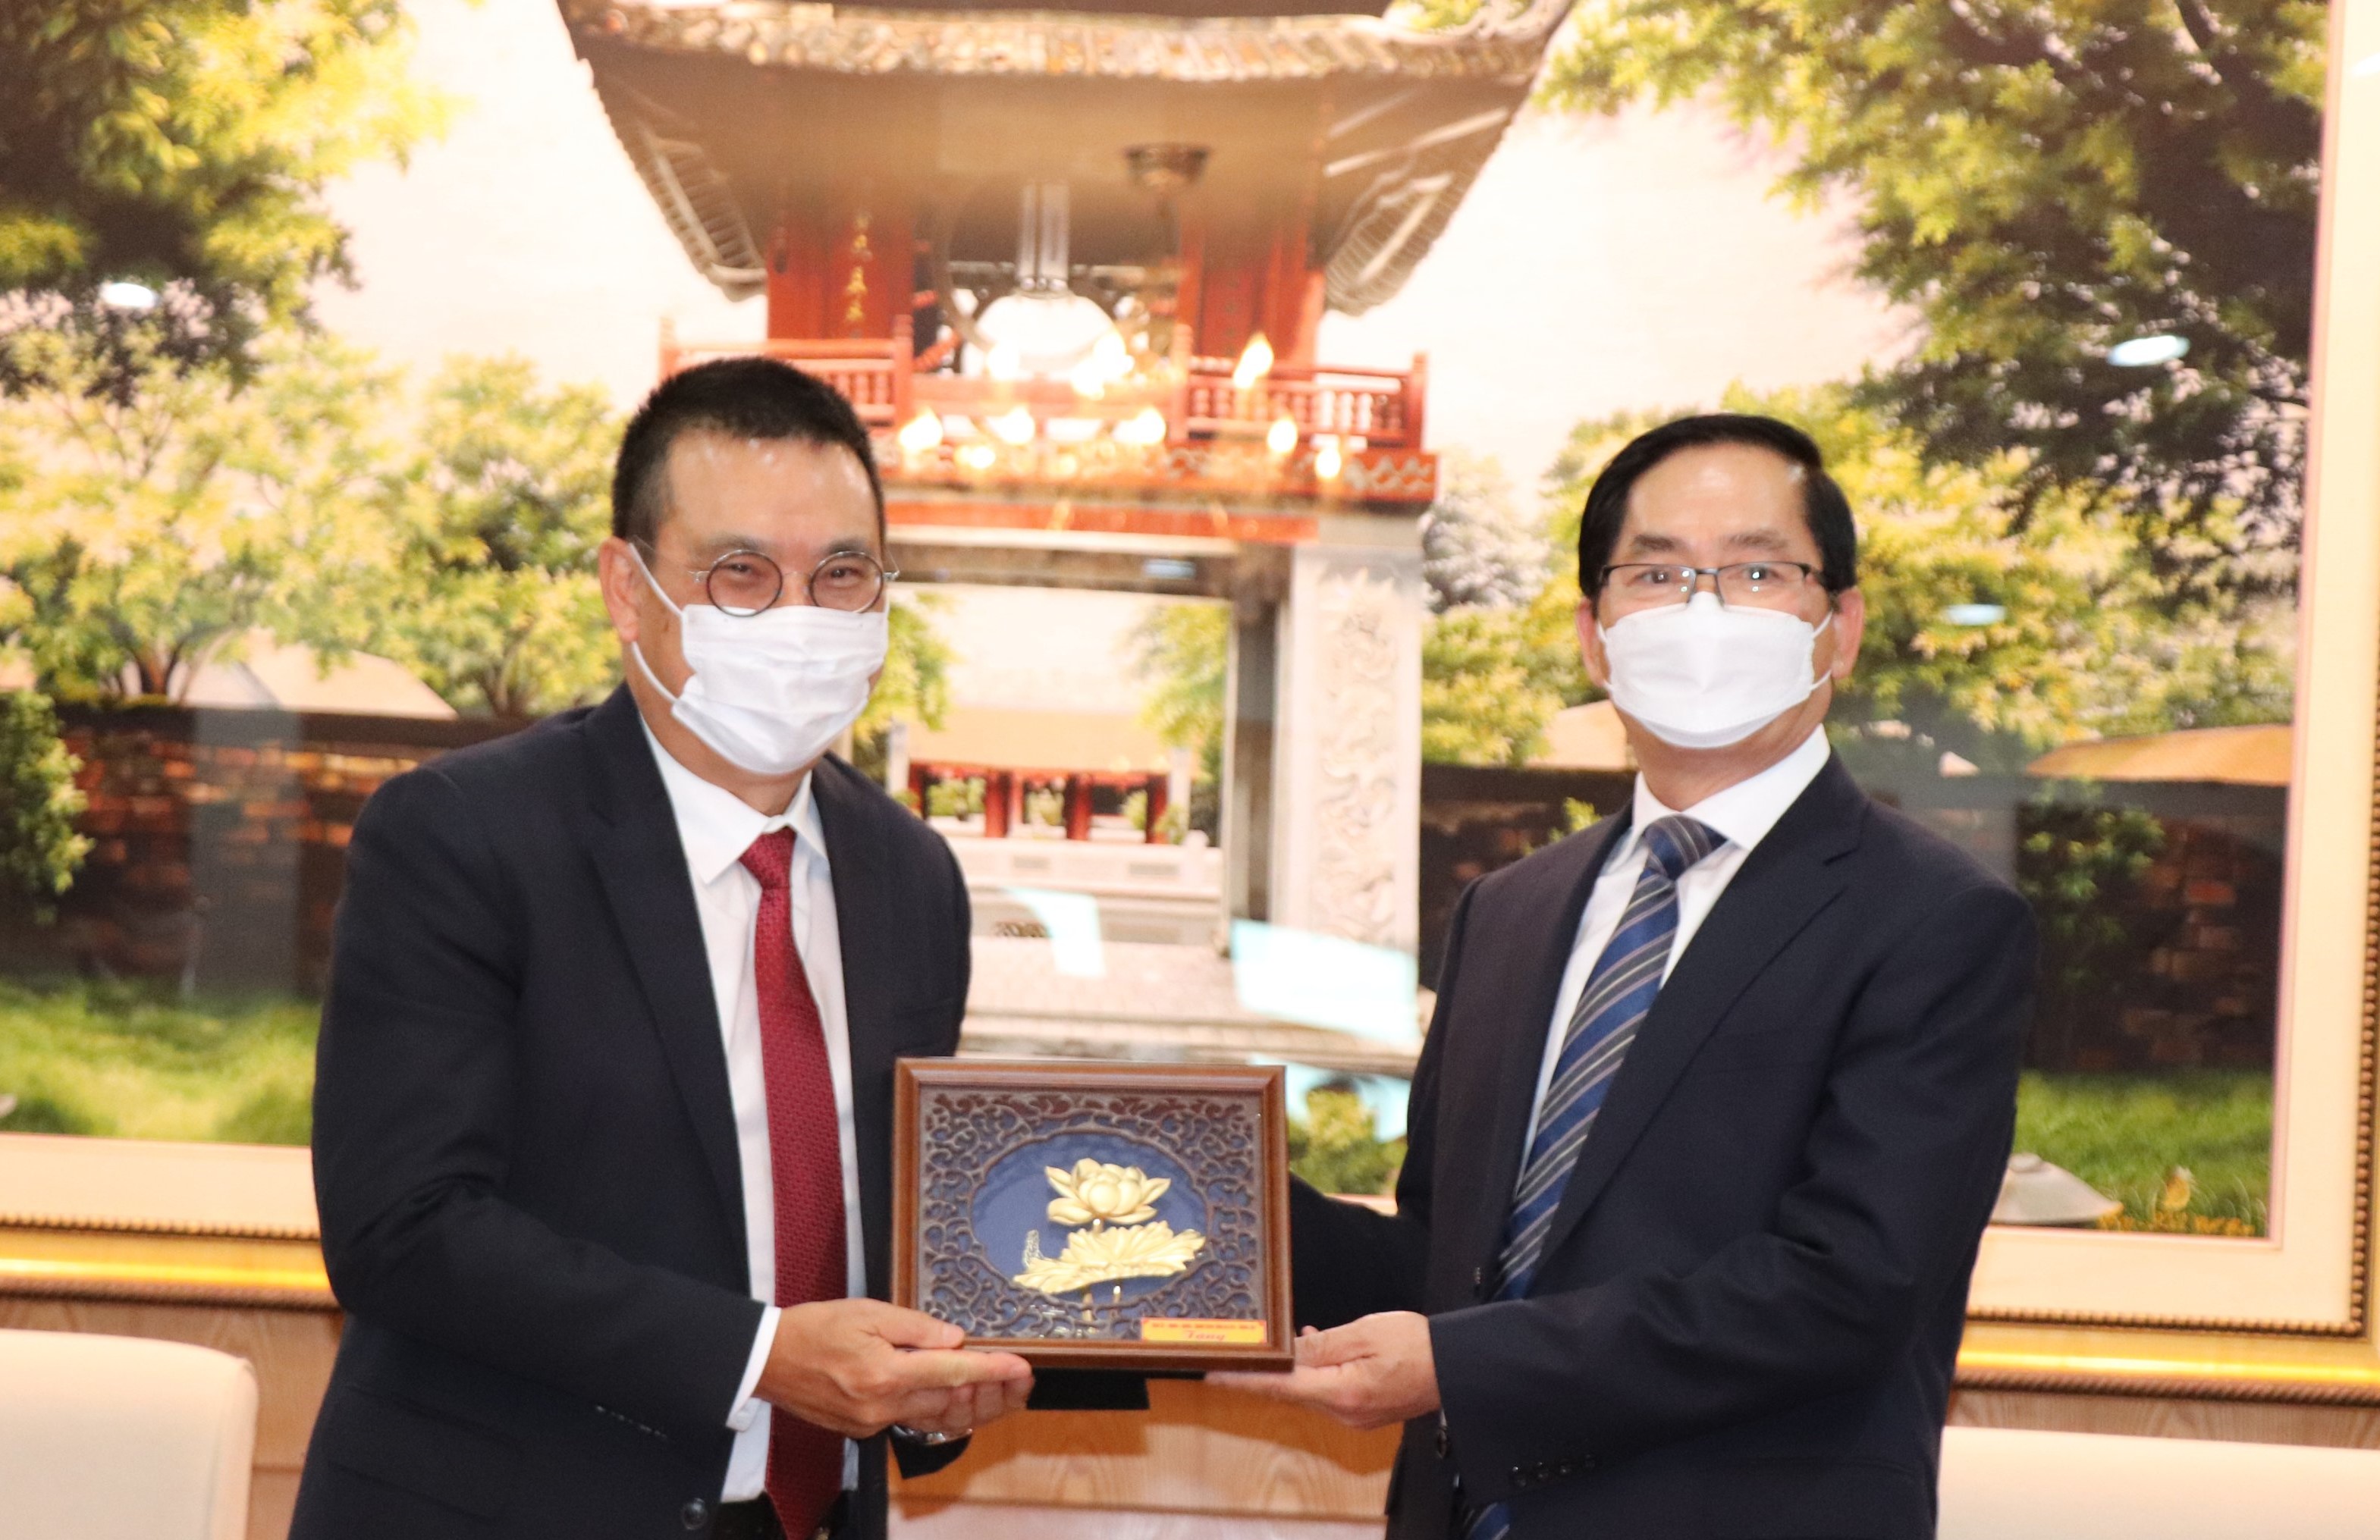 Bí thư Tỉnh ủy Phạm Viết Thanh tặng quà lưu niệm tới ông Roongrote Rangsiyopash, Chủ tịch kiêm Tổng Giám đốc Tập đoàn SCG Thái Lan